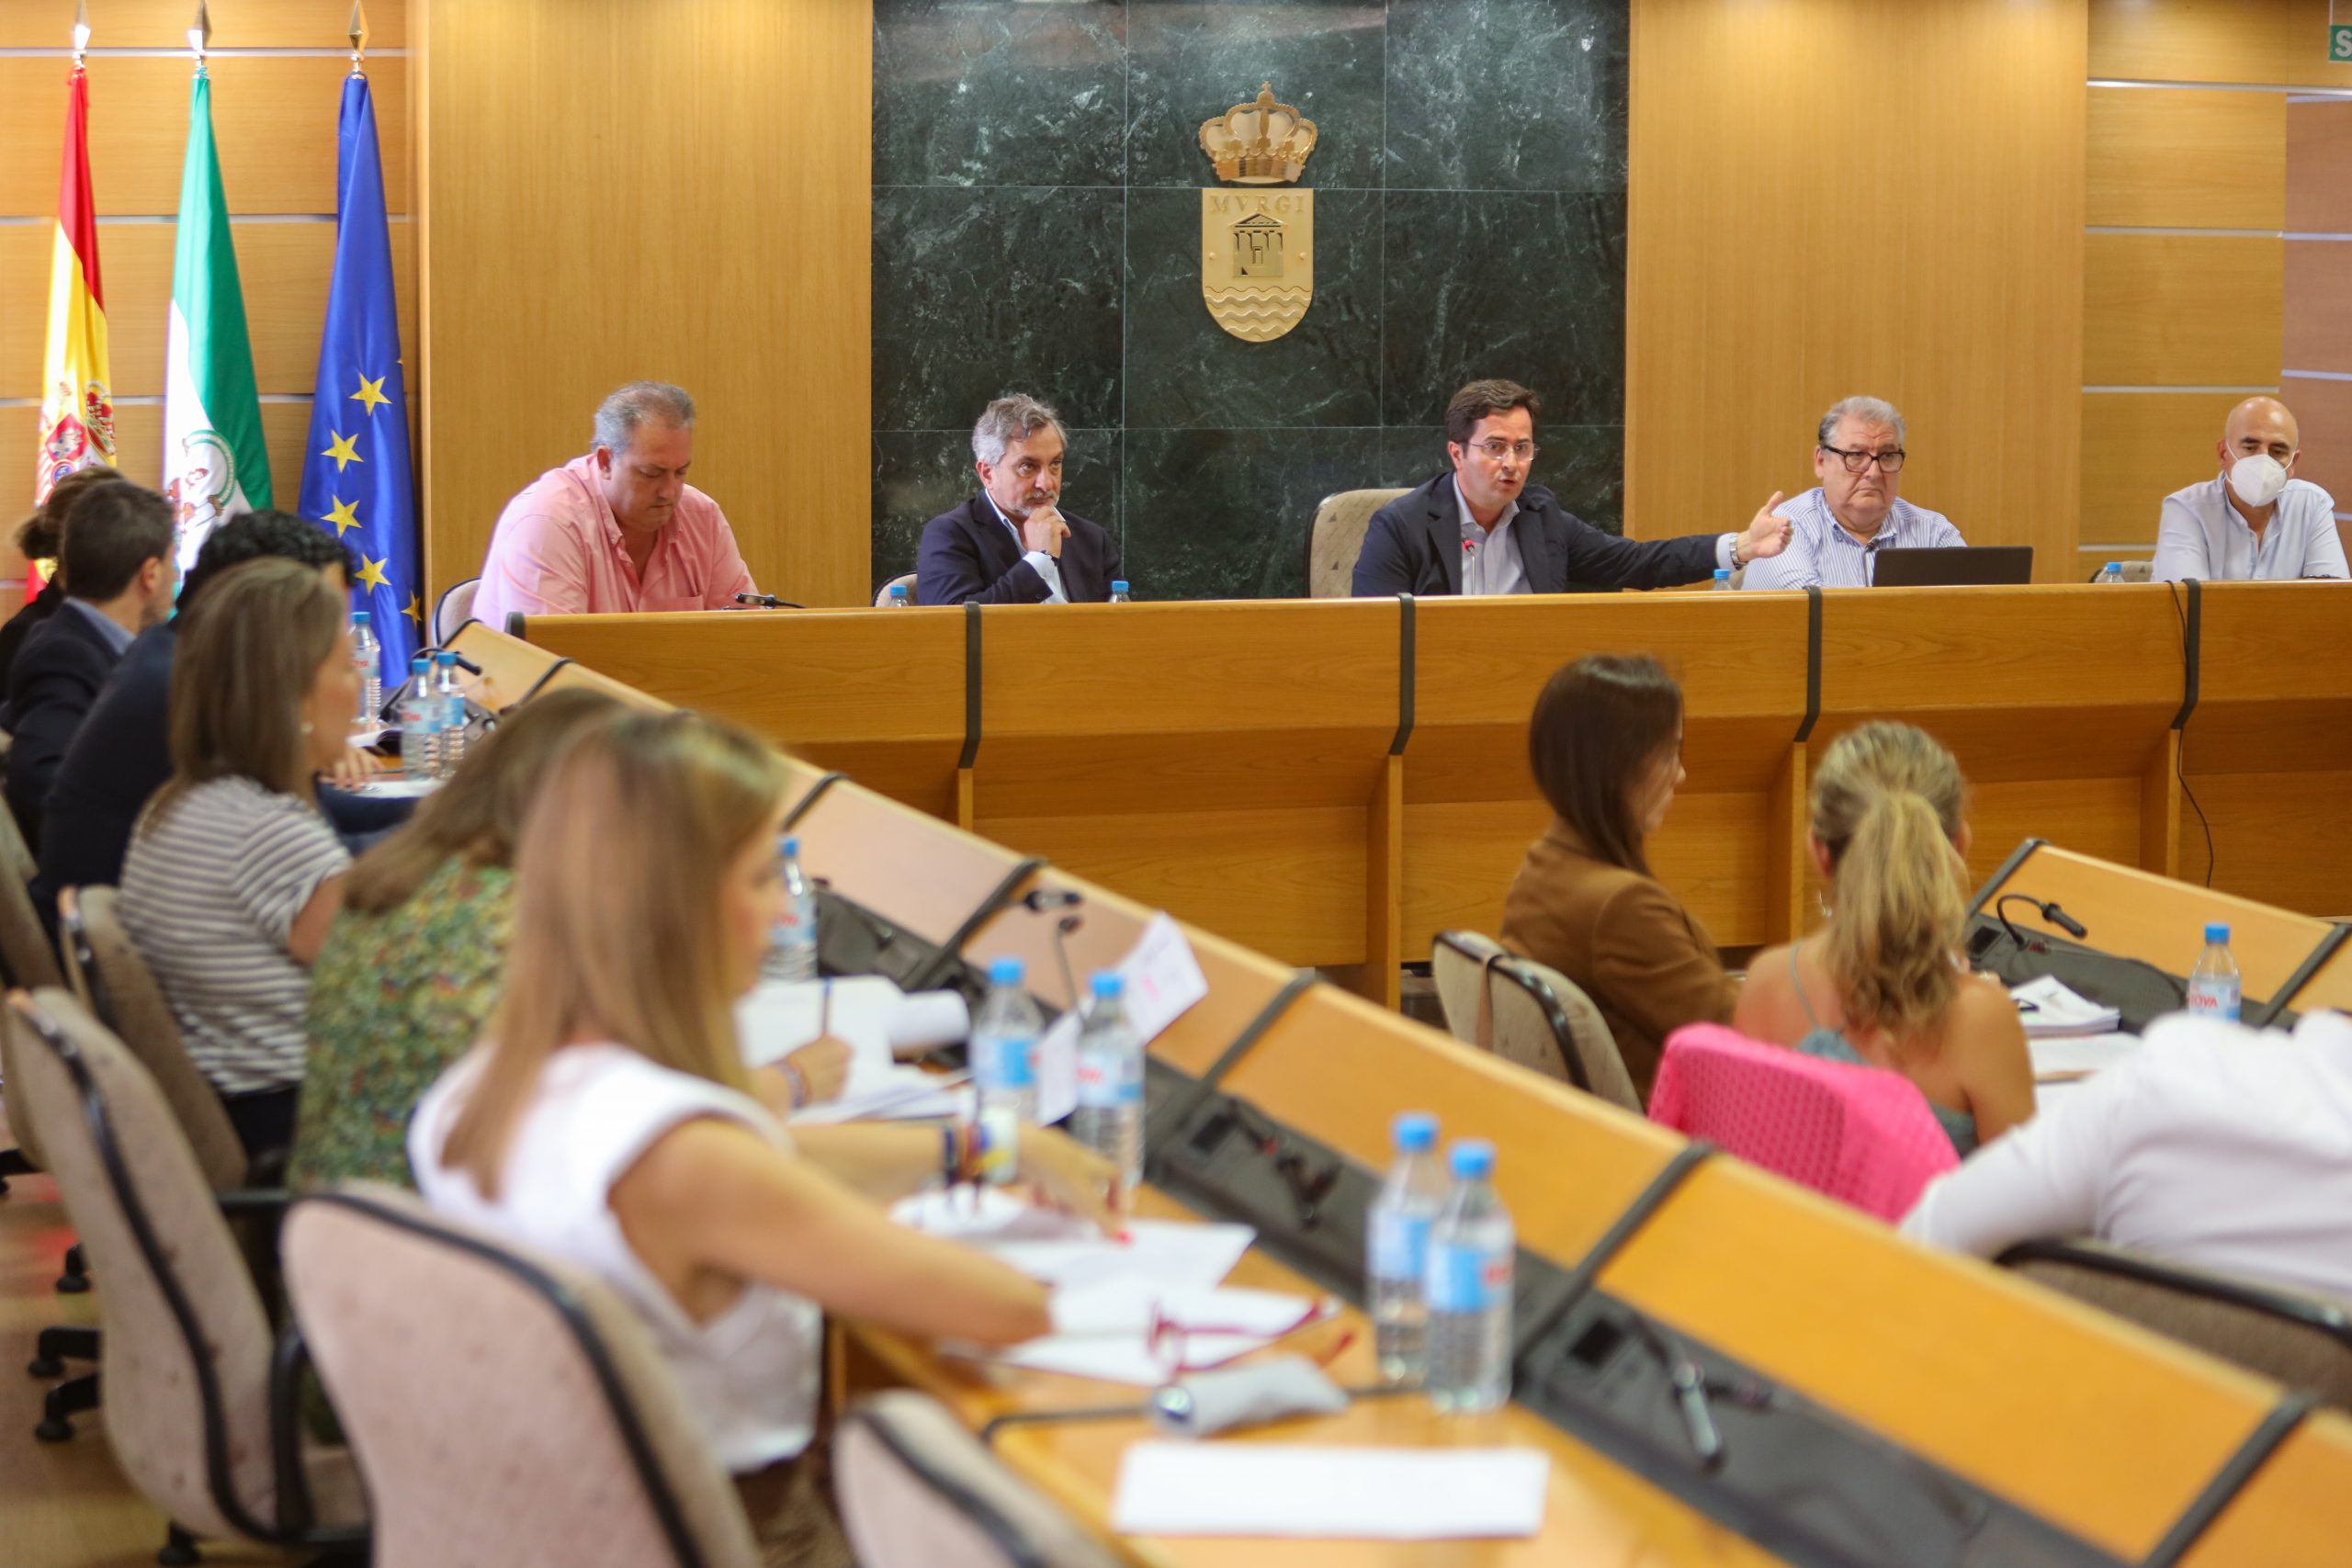 El Pleno aprueba el convenio entre Diputación de Almería y Ayuntamiento para la financiación, contratación y ejecución del Complejo Deportivo de Almerimar y el Pabellón de Ejido Norte